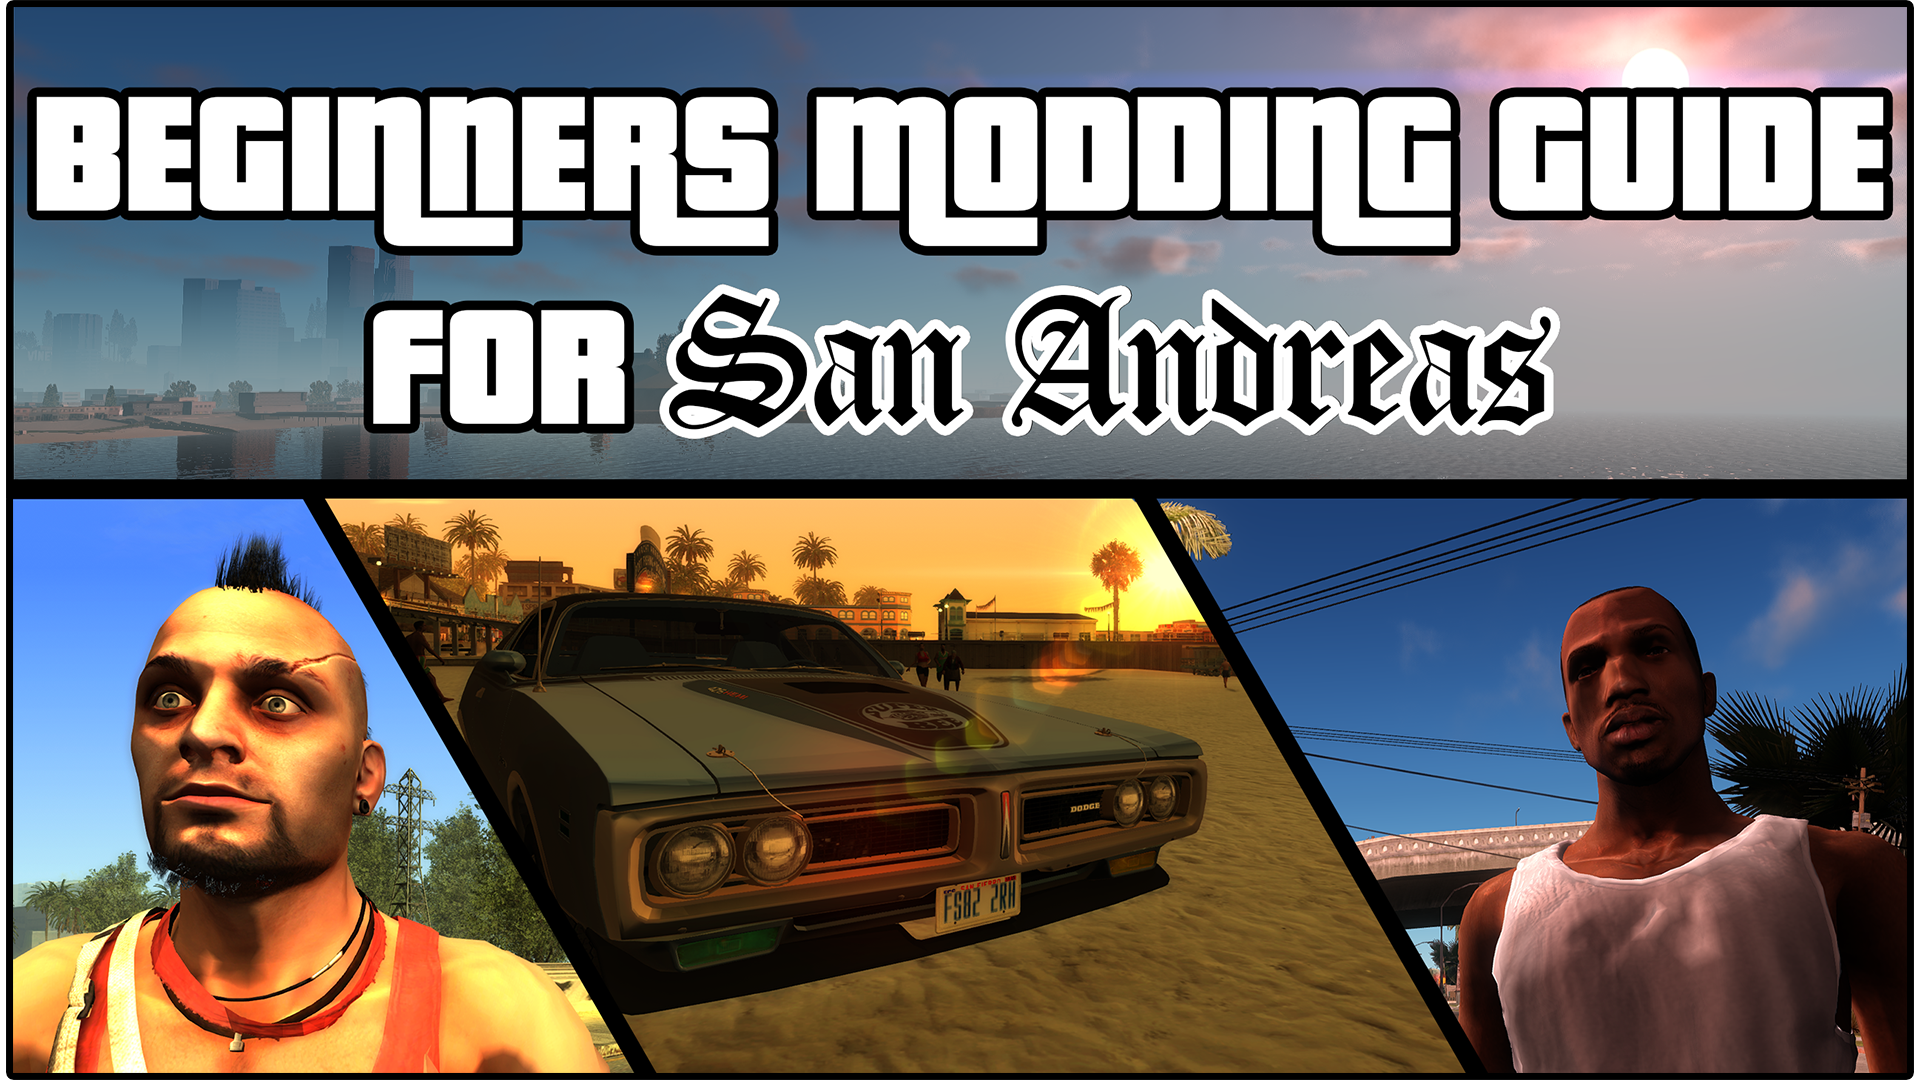 Steam Community :: Guide :: Modding GTA San Andreas for Beginner's